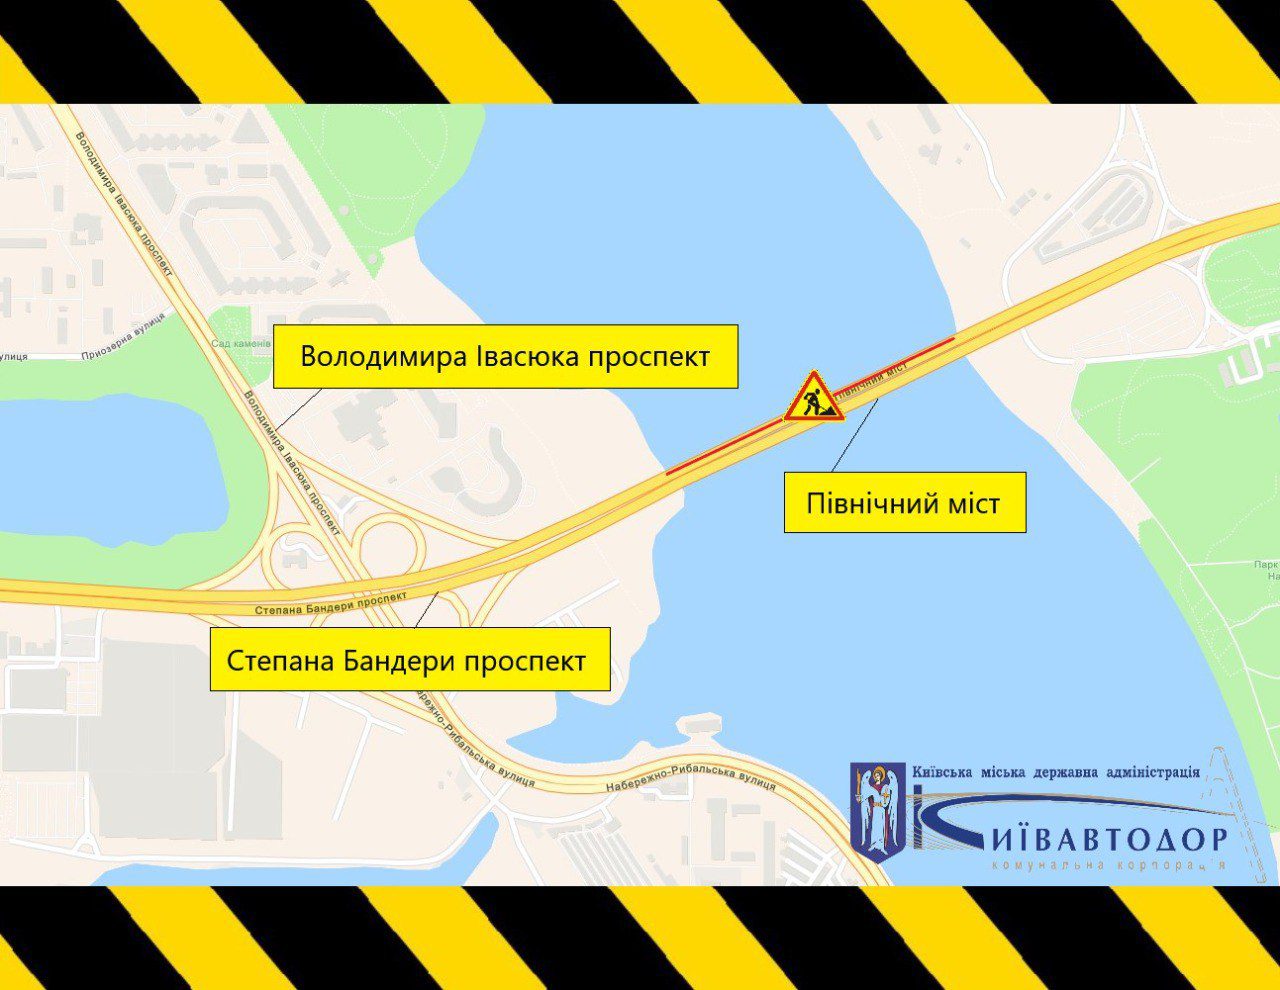 Відзавтра до 10 серпня на Північному мосту у Києві обмежуватимуть рух транспорту (схема)